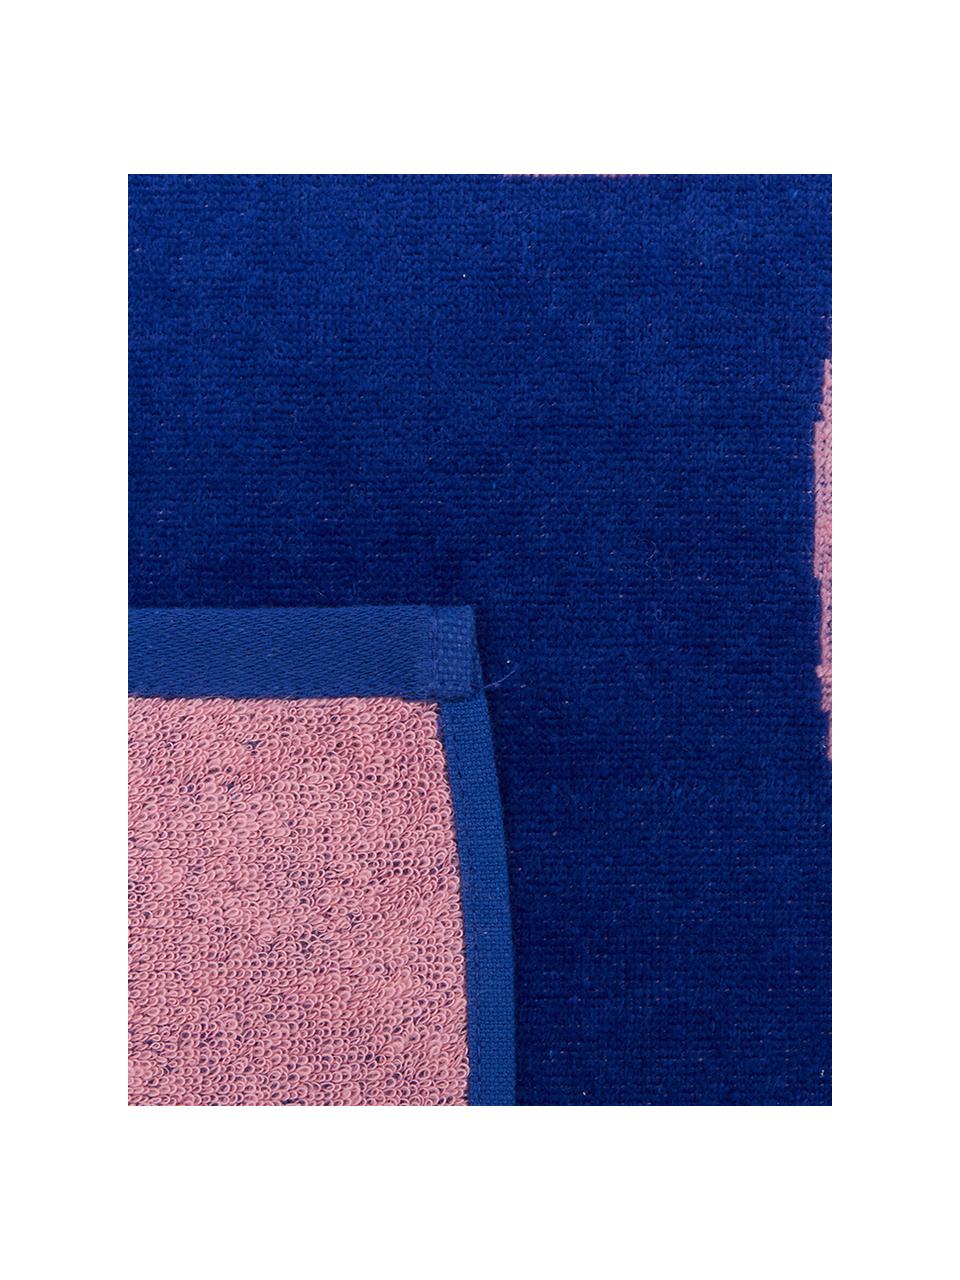 Serviette de plage à imprimé flamand rose Mingo, Bleu, rose vif